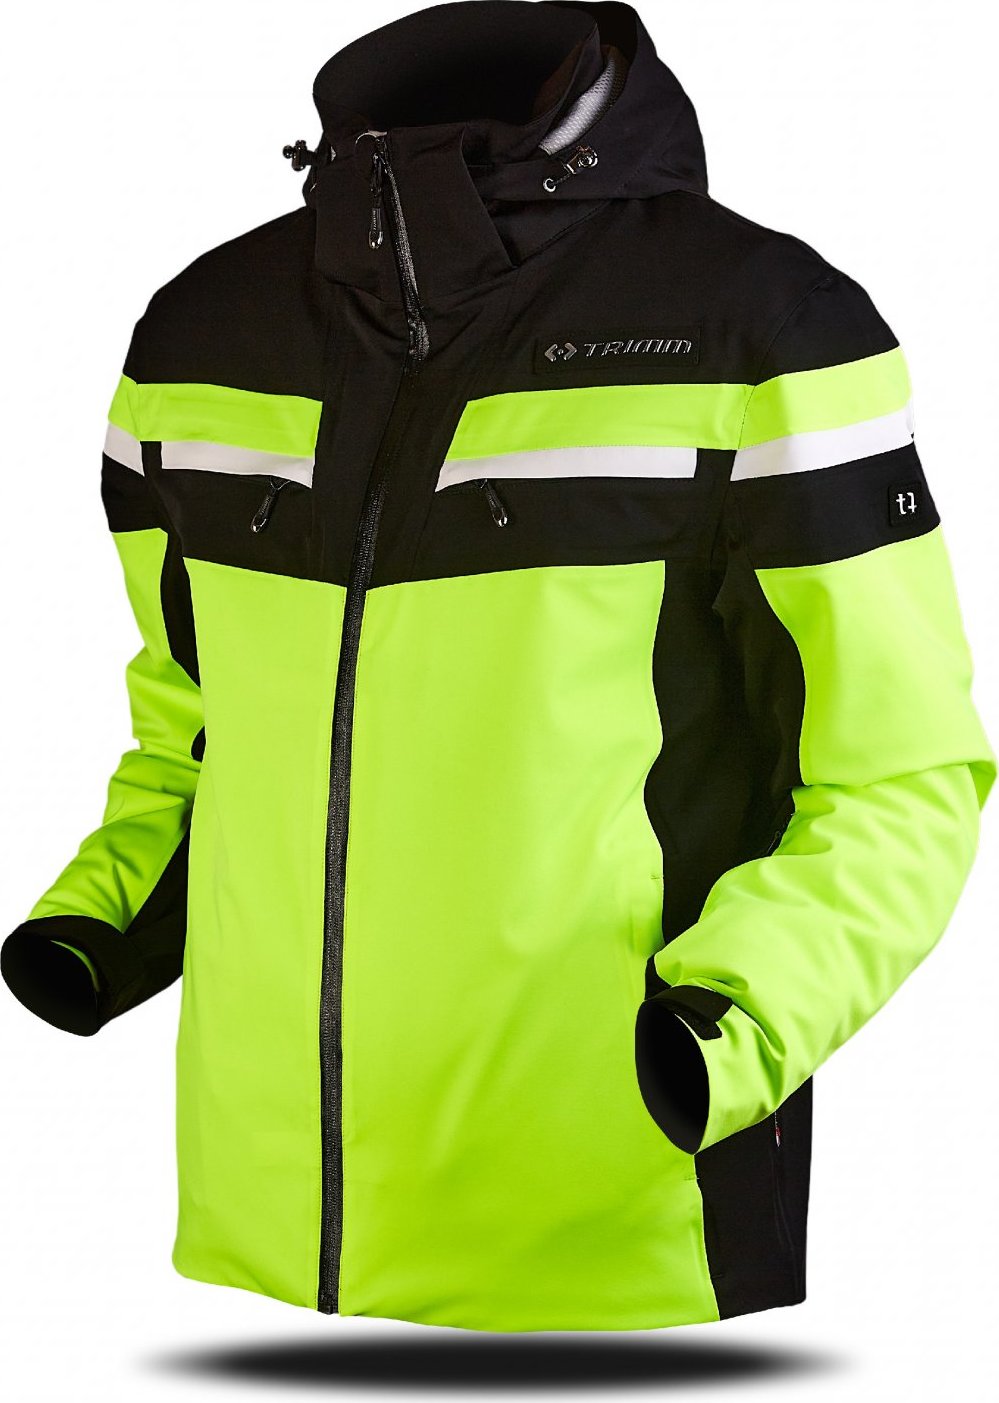 Pánská lyžařská bunda TRIMM Fusion žlutá Velikost: L, Barva: lemon/black/white